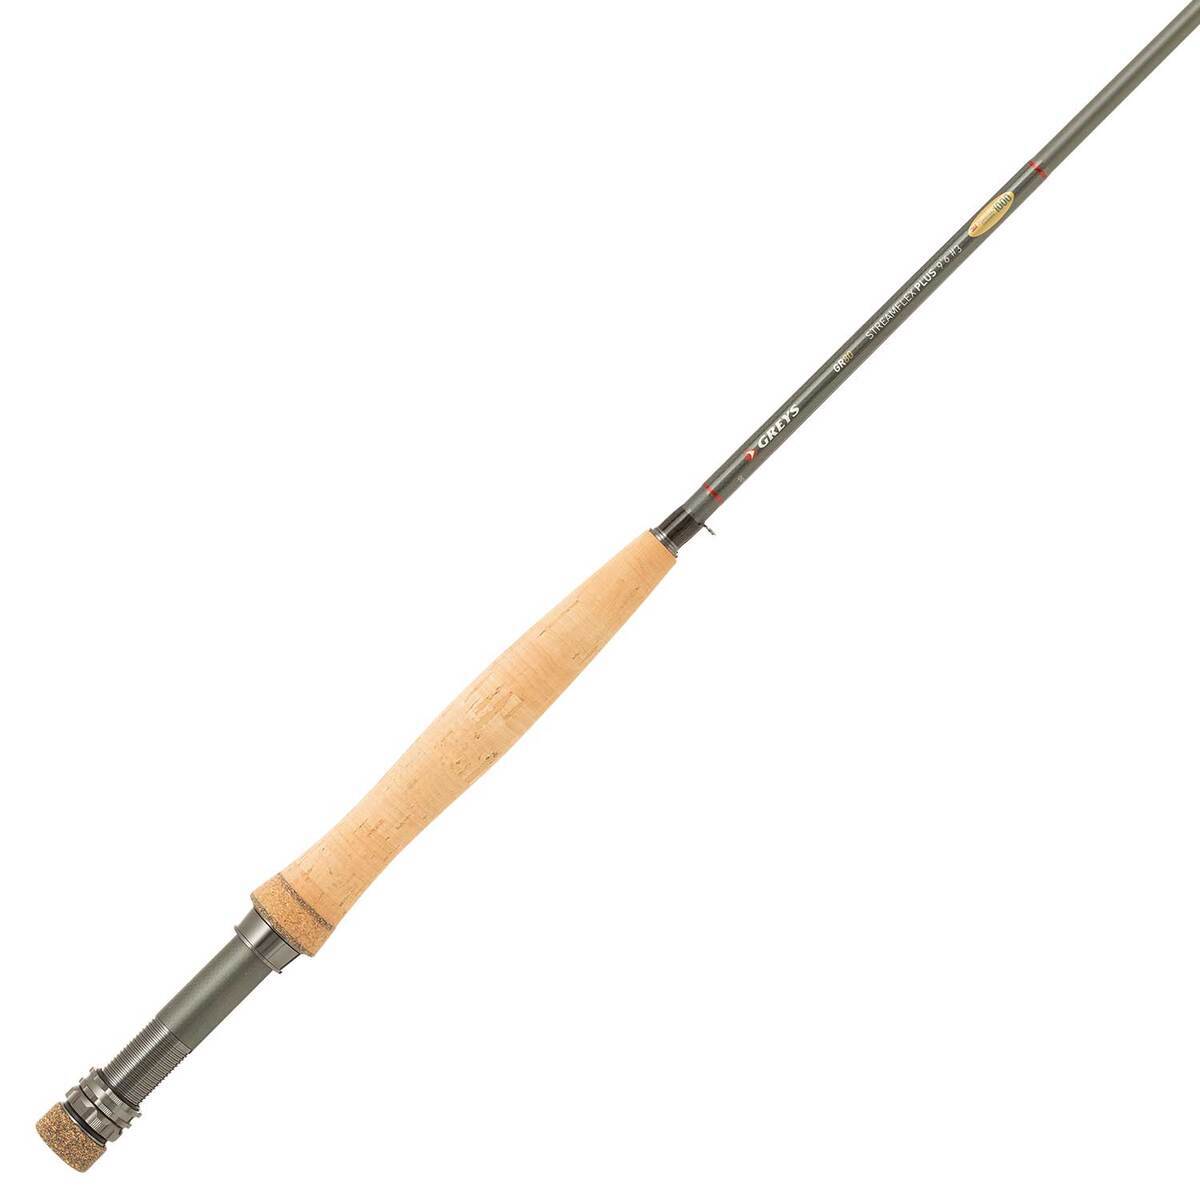 Greys GR80 Streamflex Plus Fly Fishing Rod